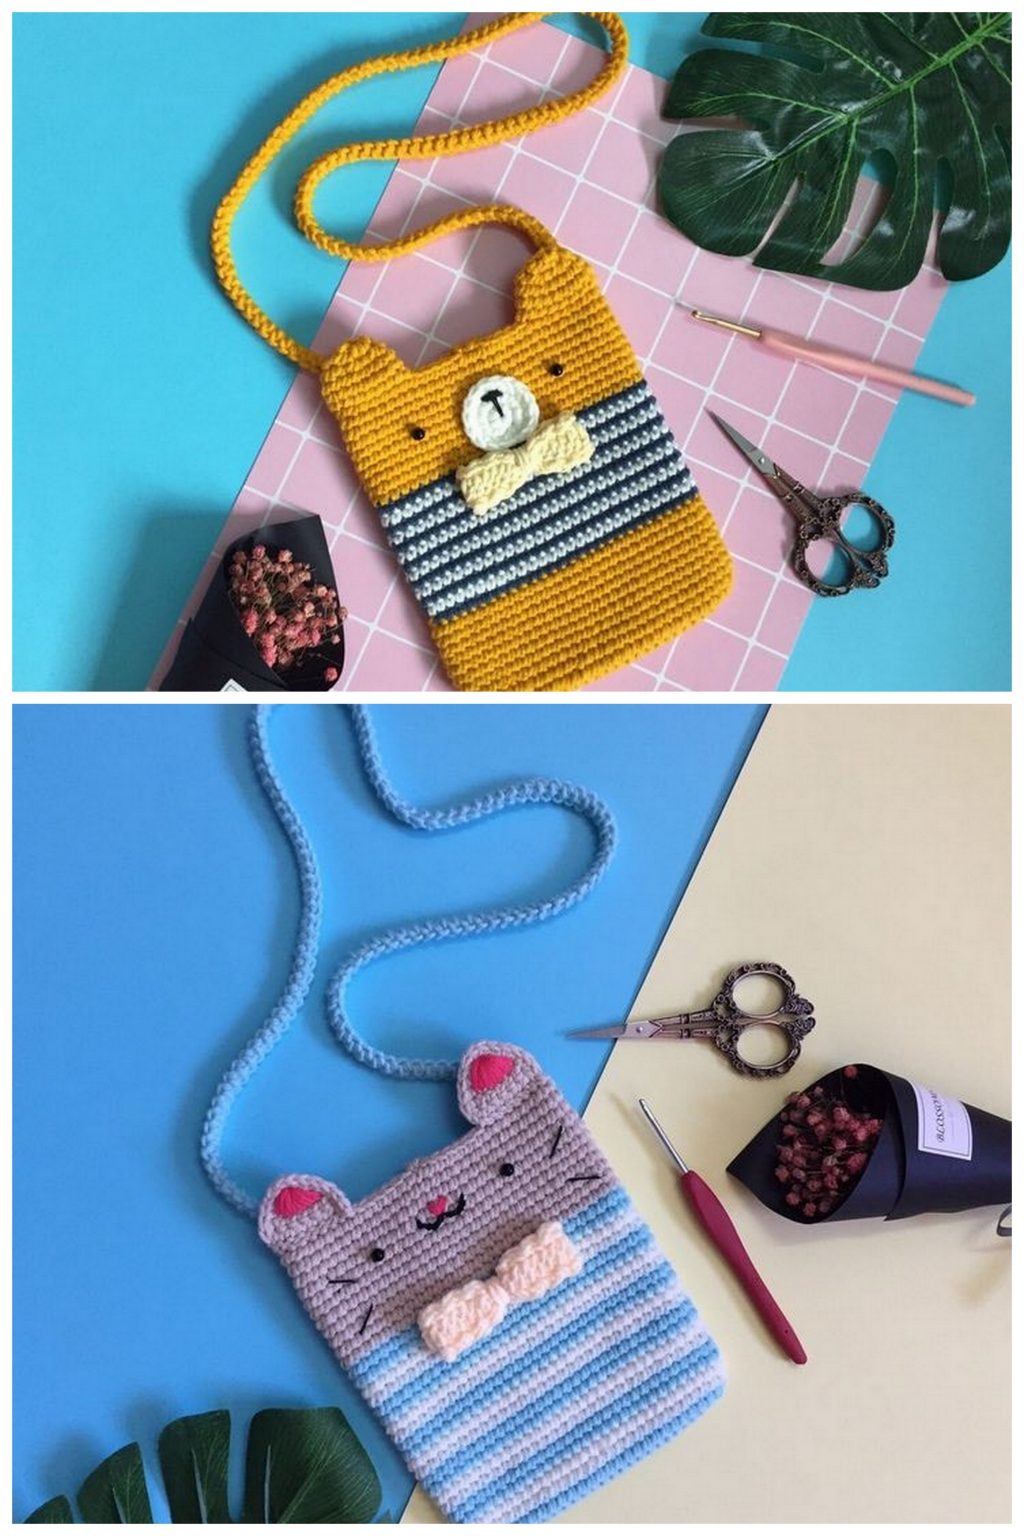 Amigurumi Bag Free Pattern - 01 Amigurumi Dog Bag - Free Amigurumi Crochet